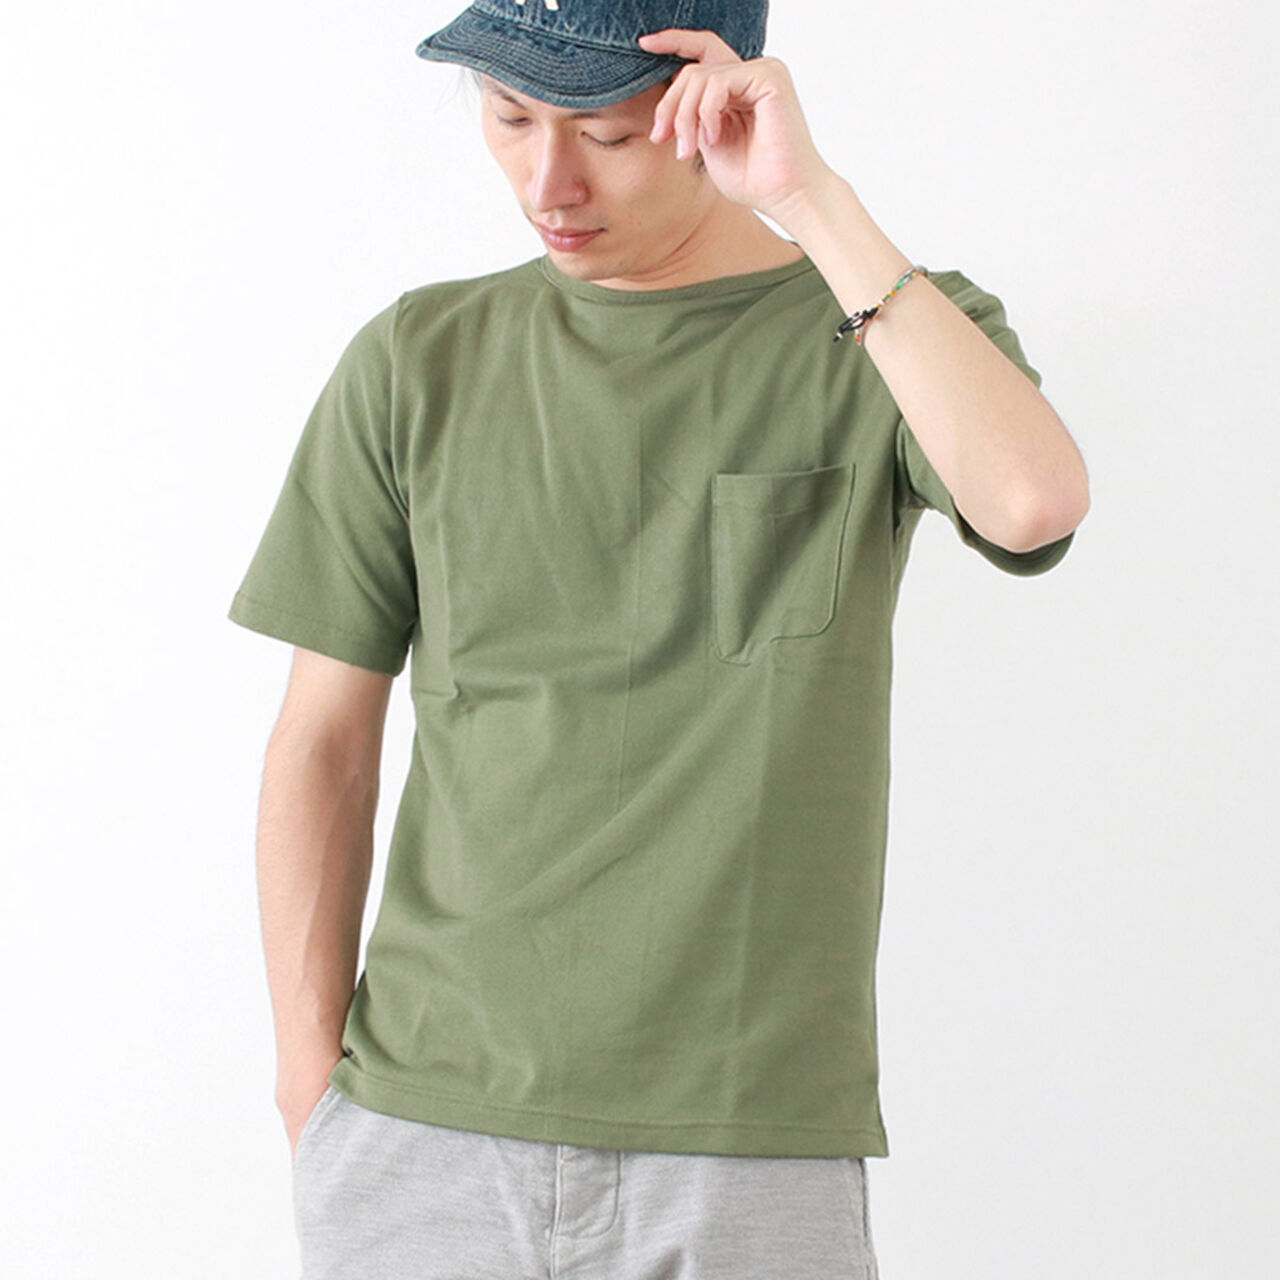 Summer Knit Pocket T-Shirt,TeaGreen, large image number 0